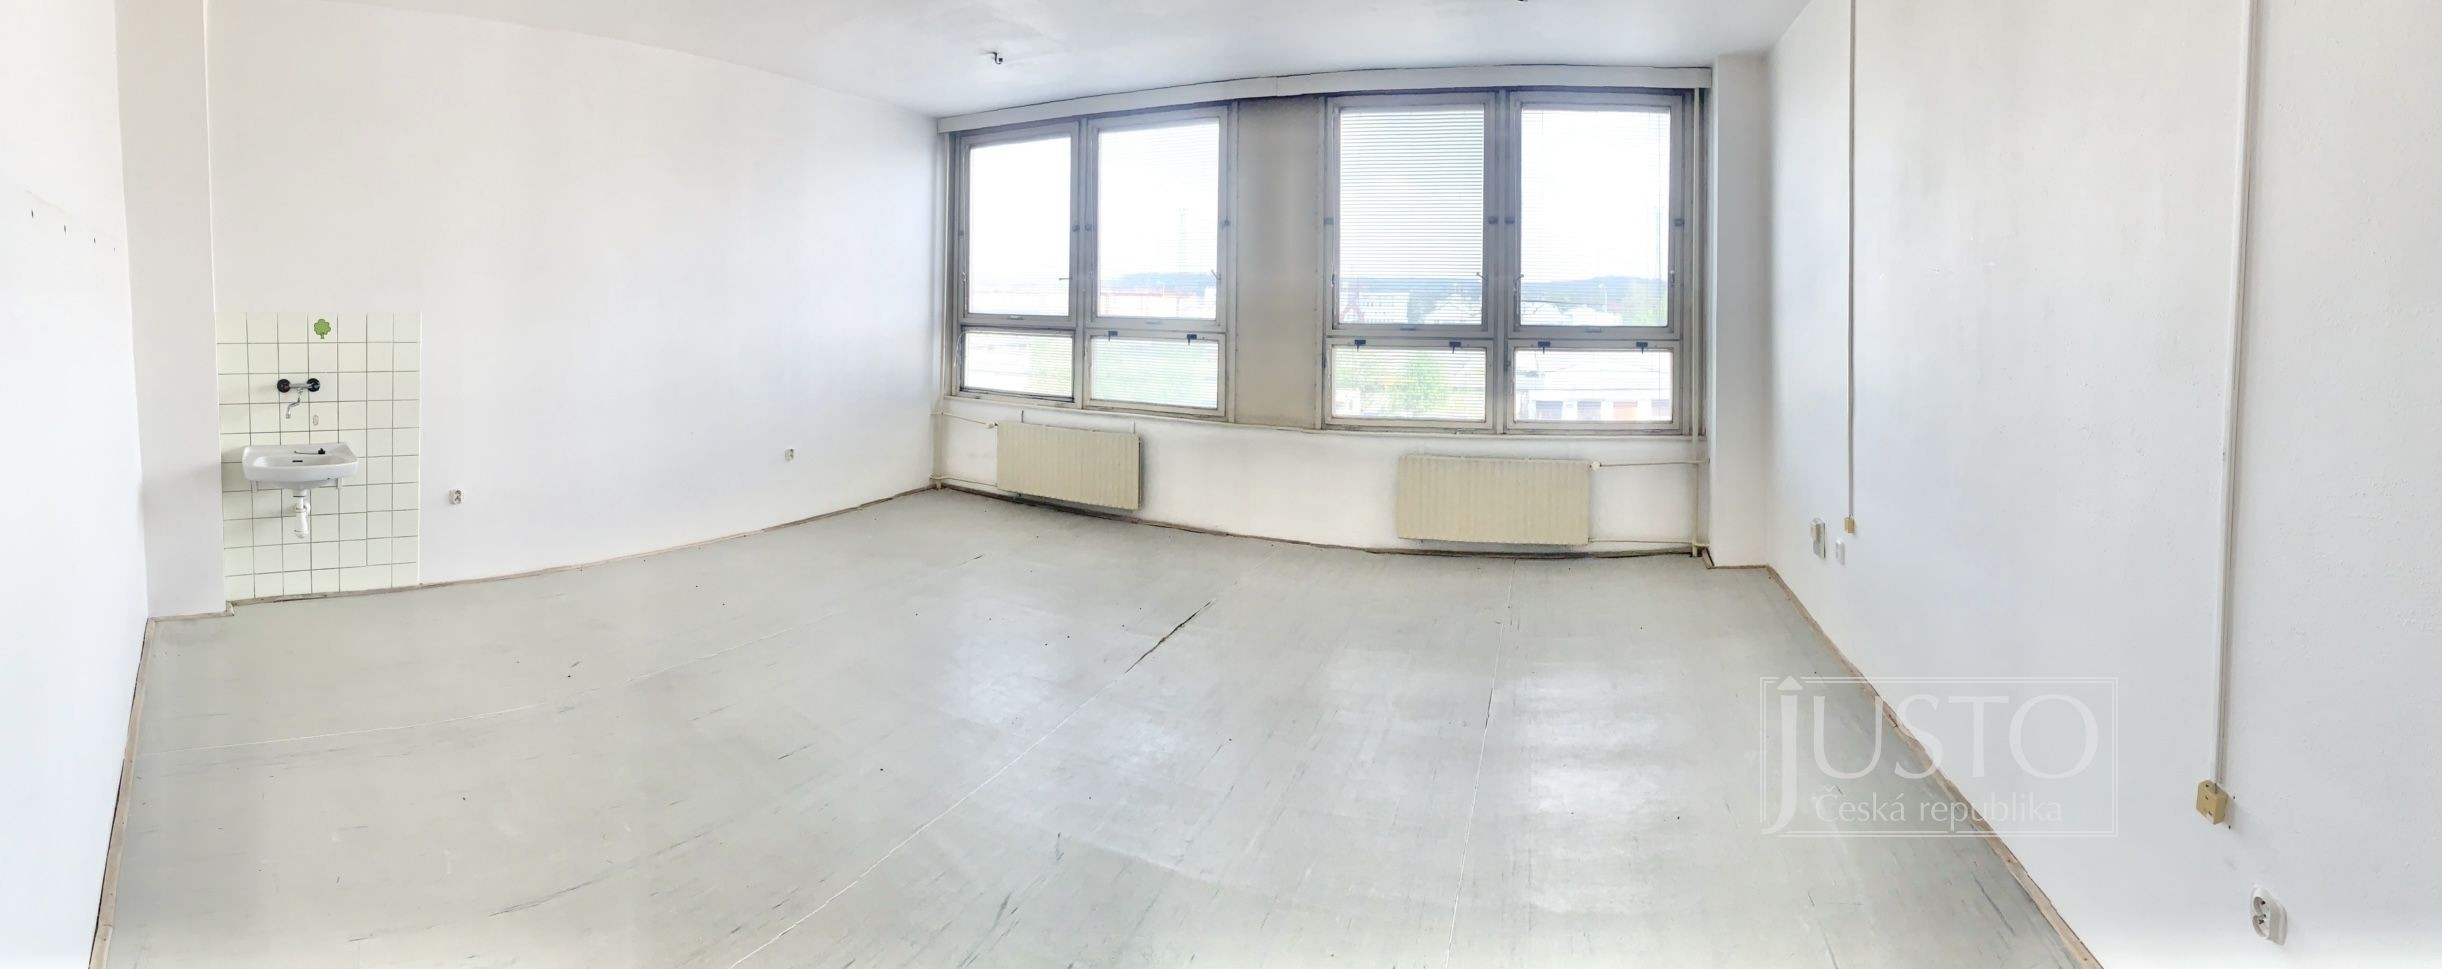 Pronájem komerčních prostor, 39,6 m², České Budějovice - Havlíčkova kolonie